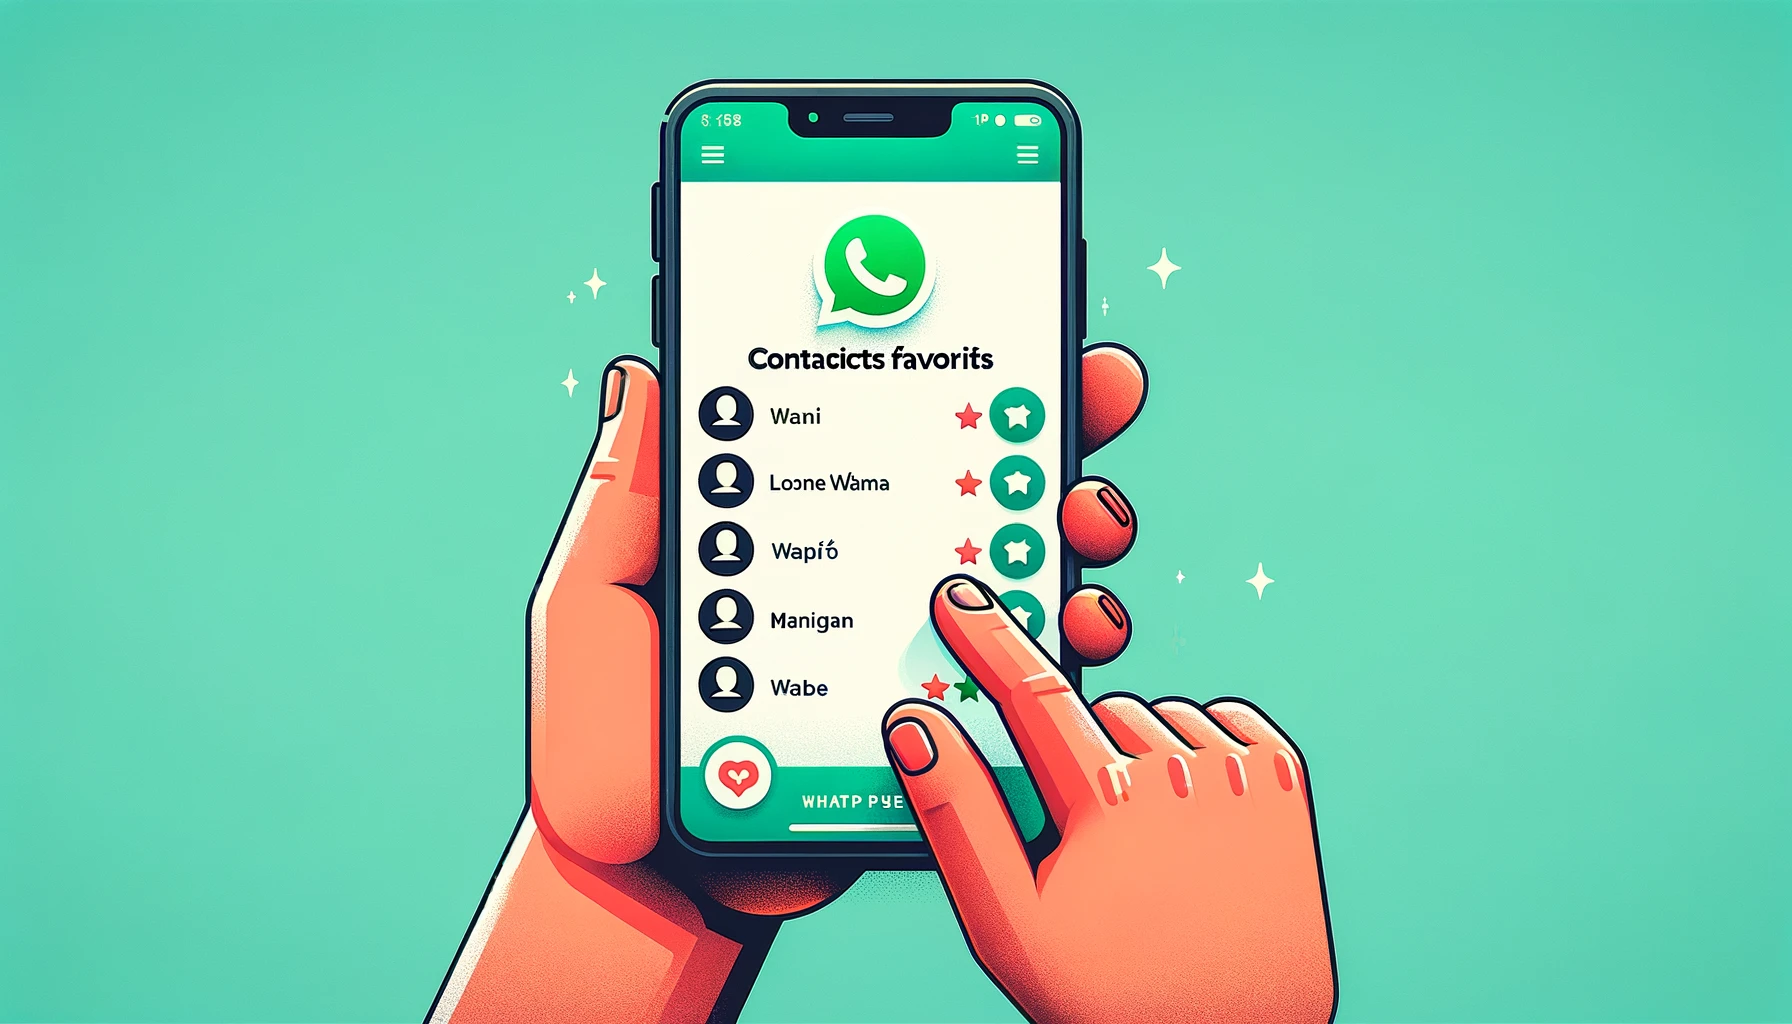 WhatsApp mejora la experiencia del usuario con los contactos favoritos